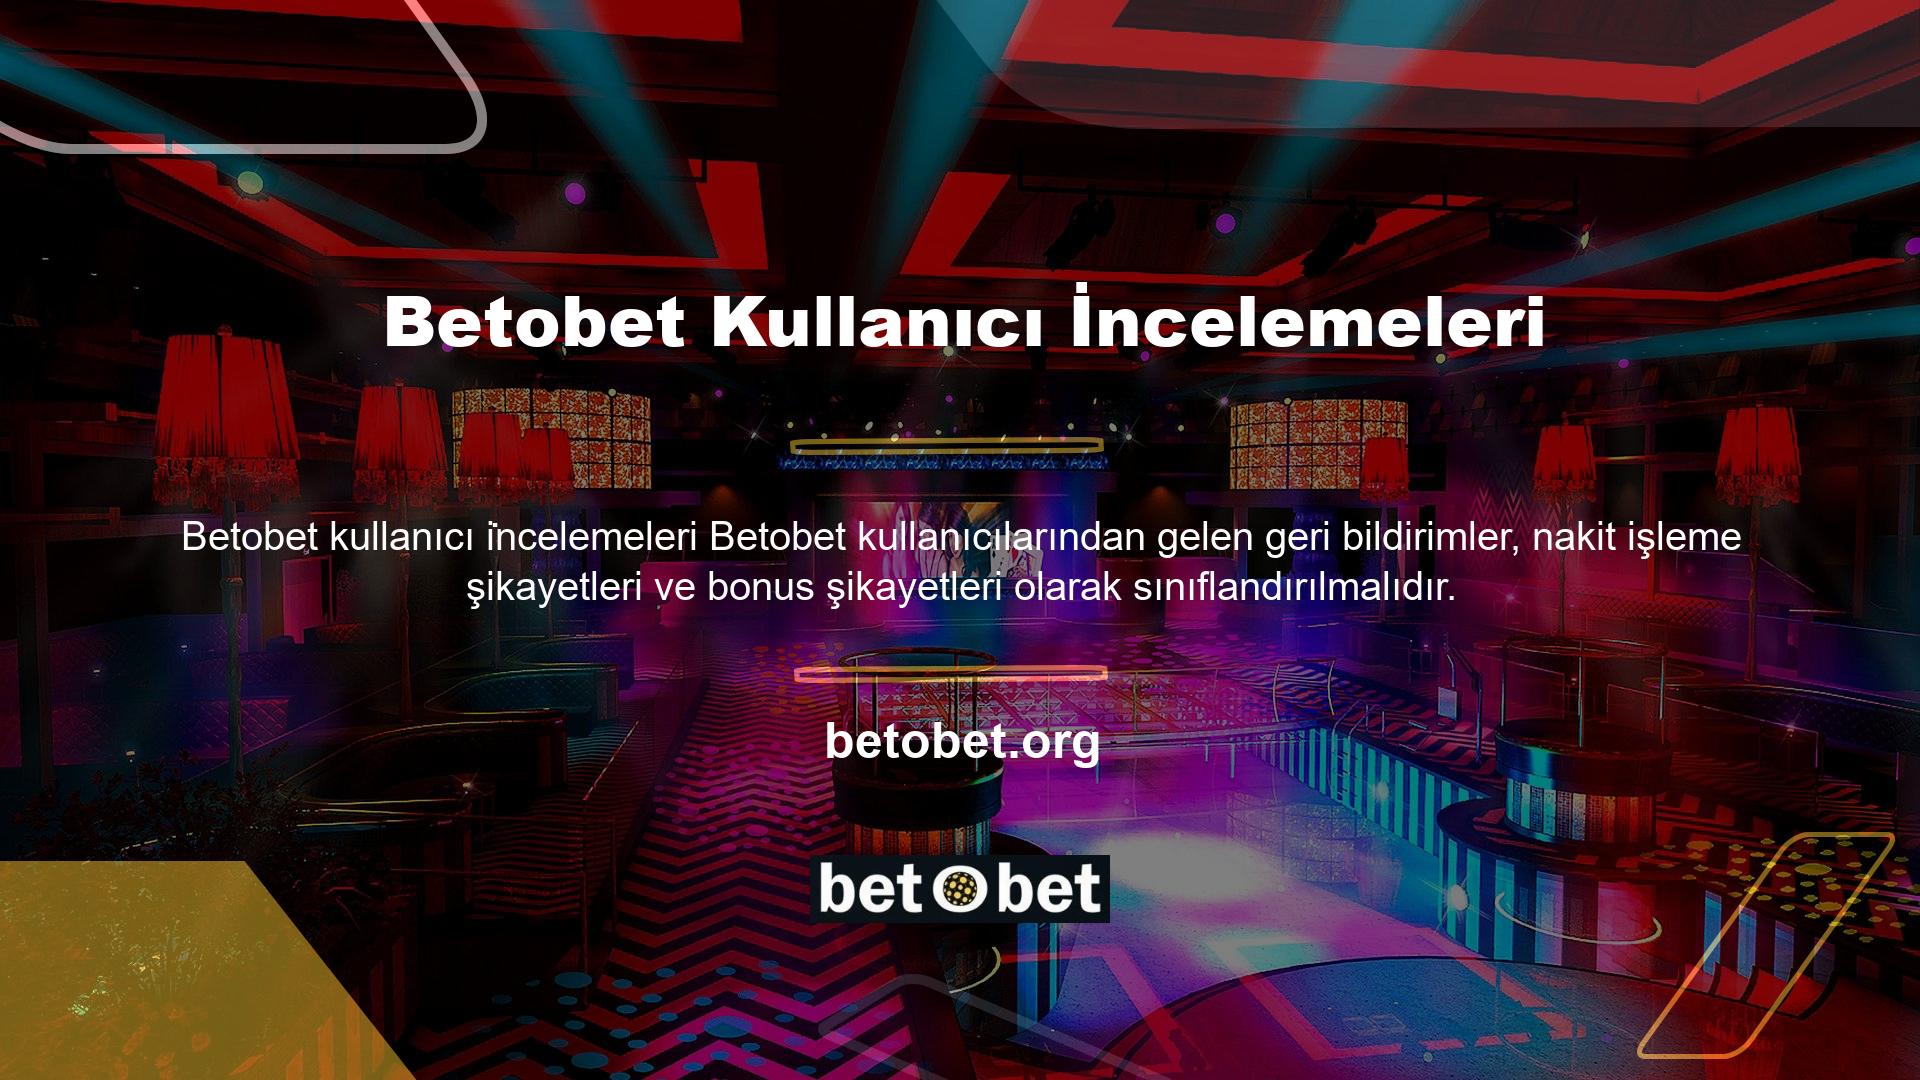 Betobet kullanıcılarına hiçbir güvenlik vaat etmeyen bir casino sitesidir